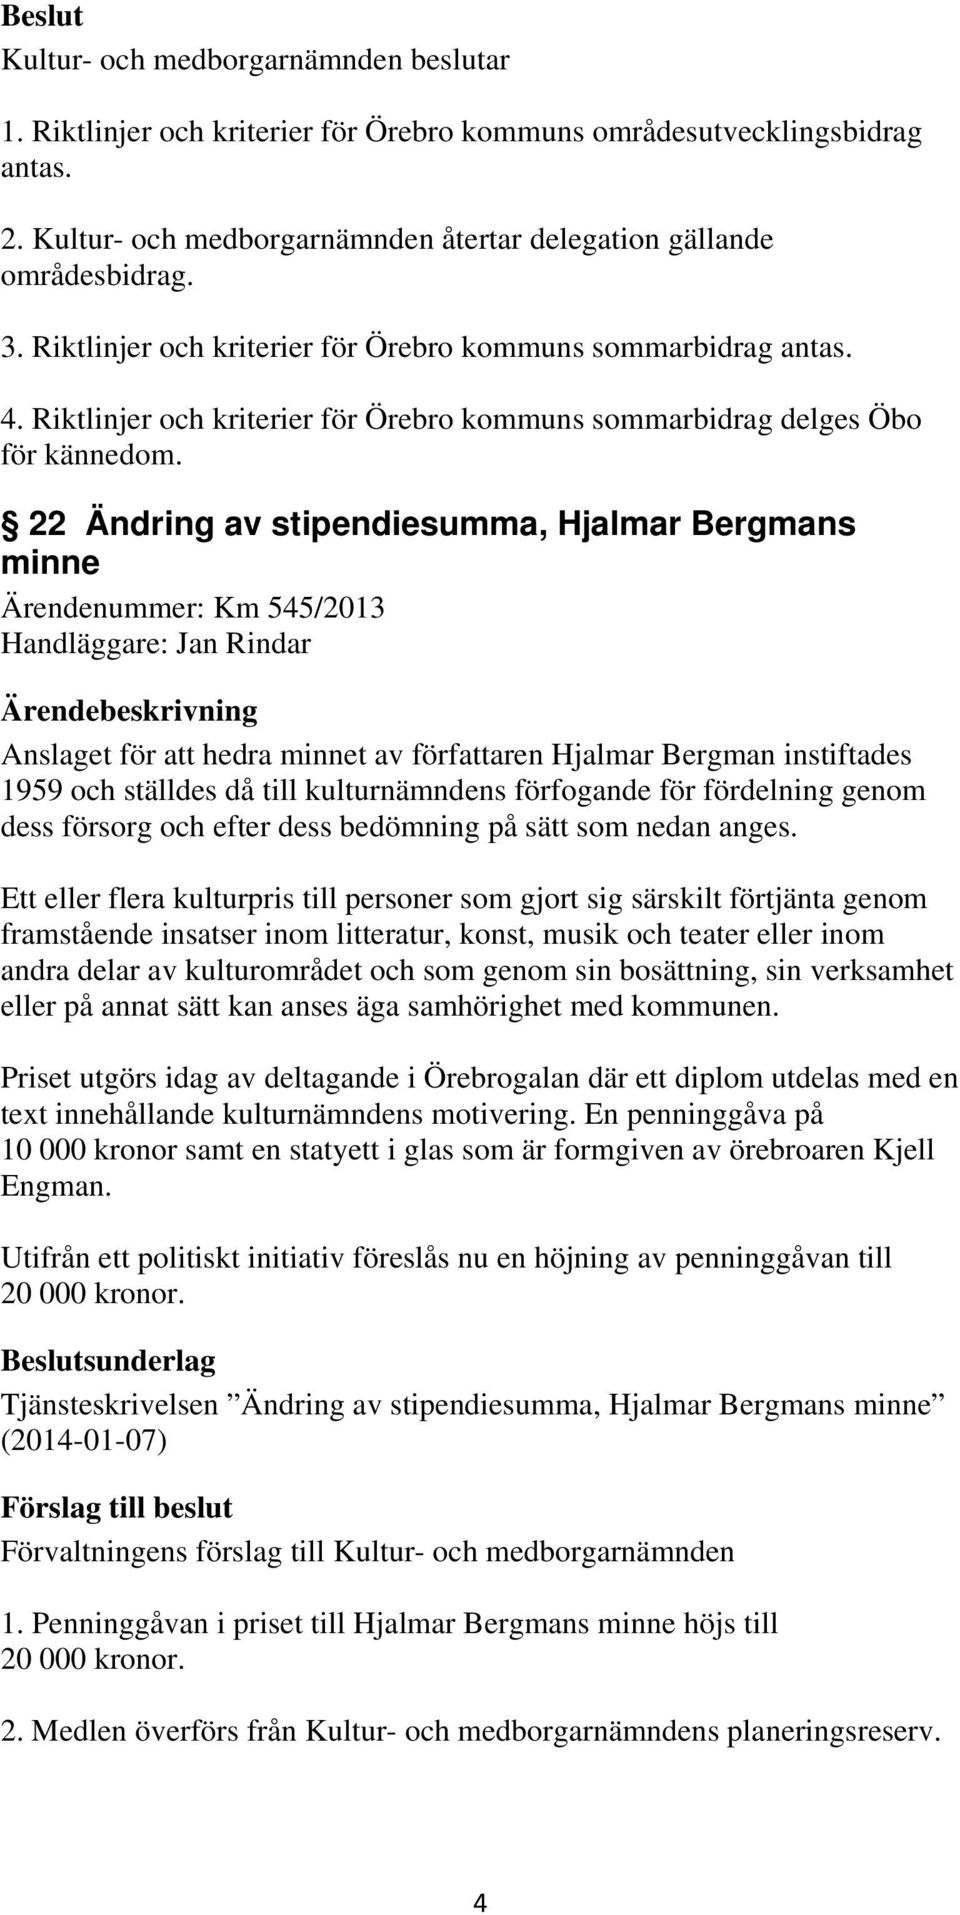 22 Ändring av stipendiesumma, Hjalmar Bergmans minne Ärendenummer: Km 545/2013 Handläggare: Jan Rindar Anslaget för att hedra minnet av författaren Hjalmar Bergman instiftades 1959 och ställdes då